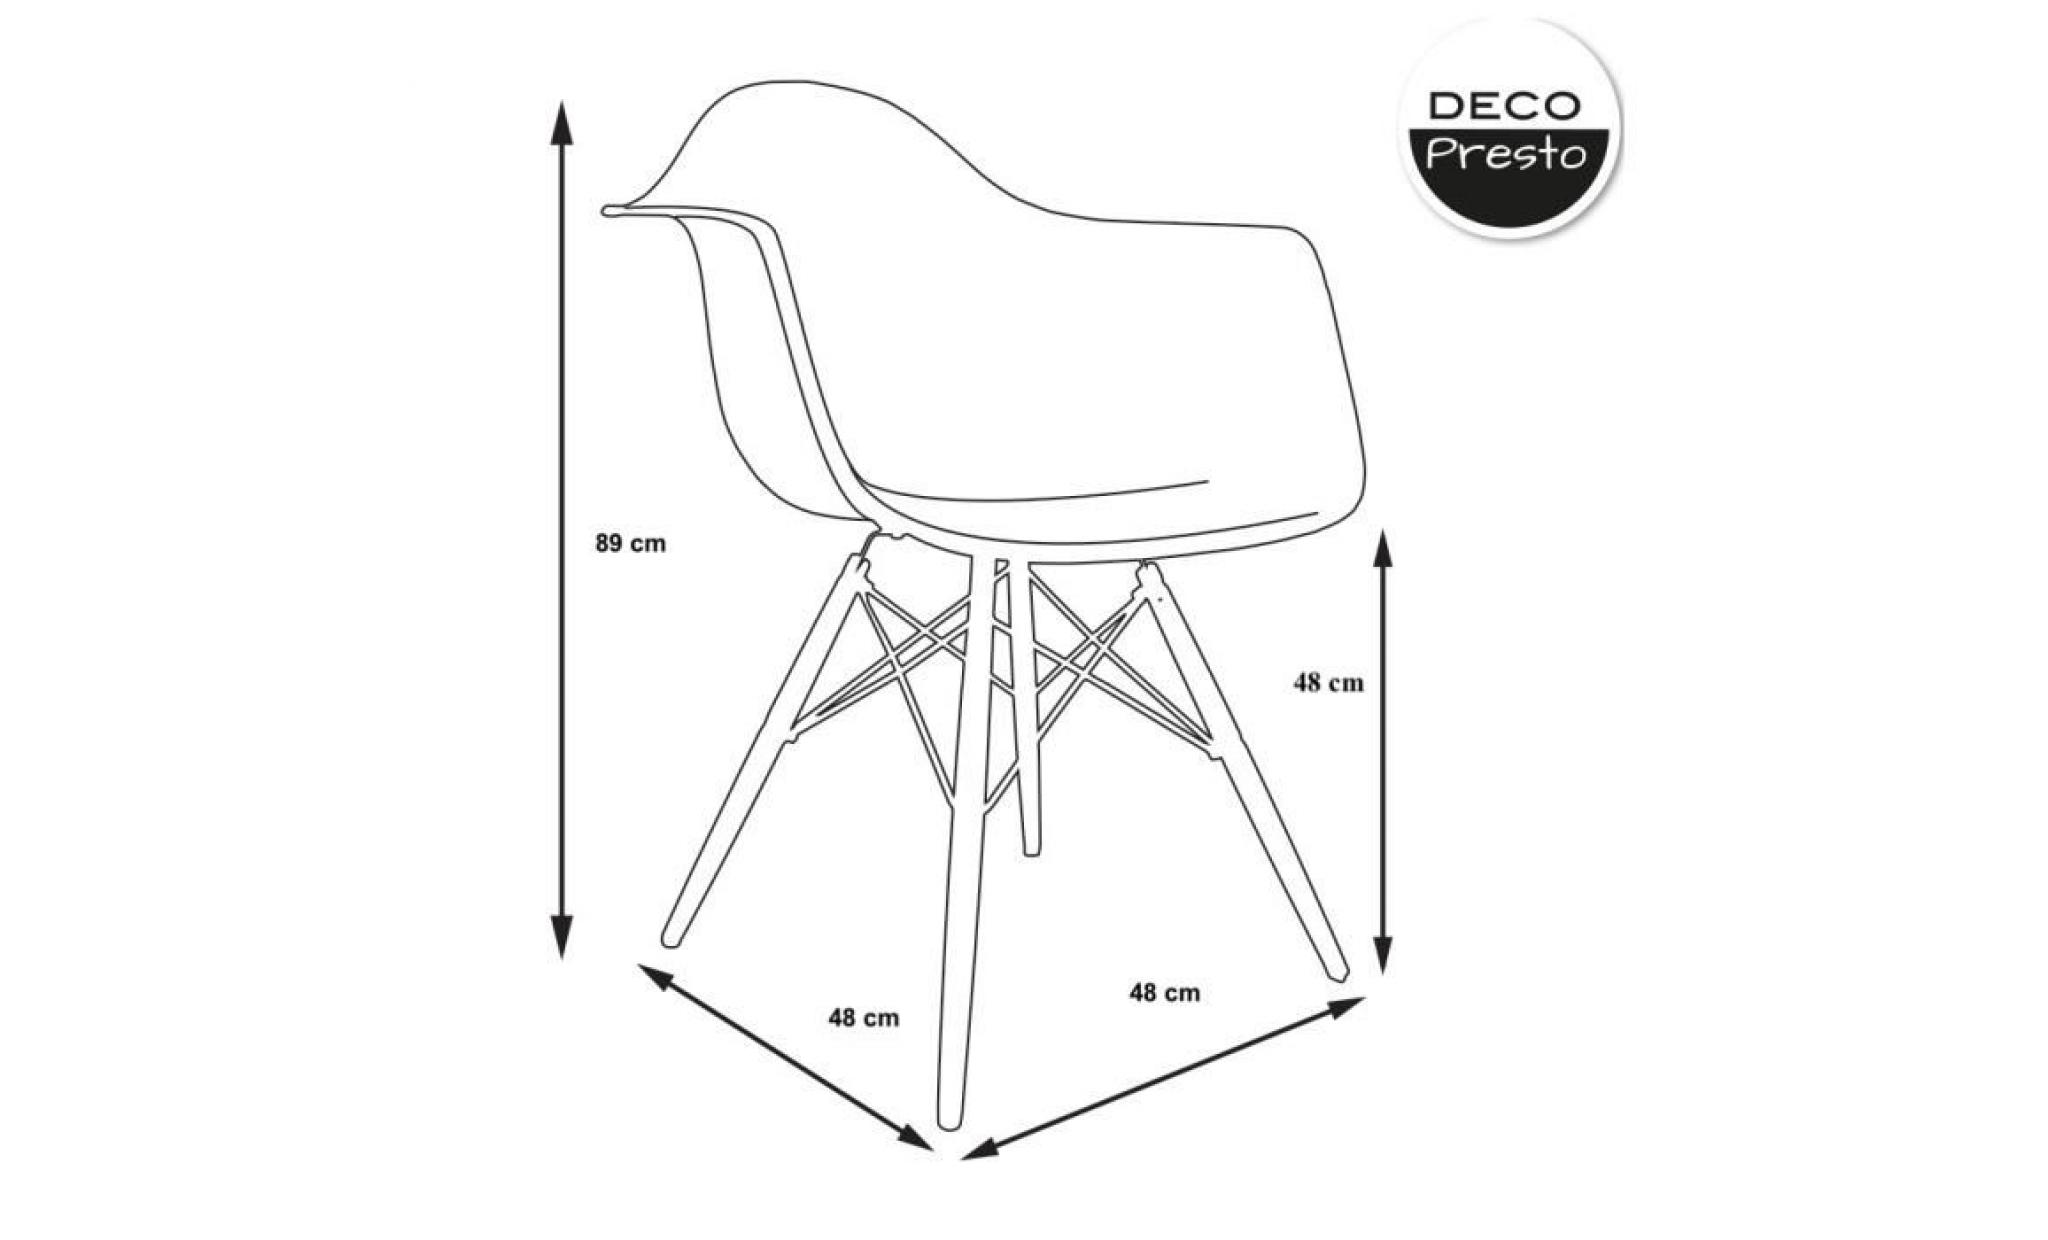 1 x fauteuil design  scandinave haut. 48 cm noir pieds: bois vernis noyer decopresto dp dawd48 no 1 pas cher